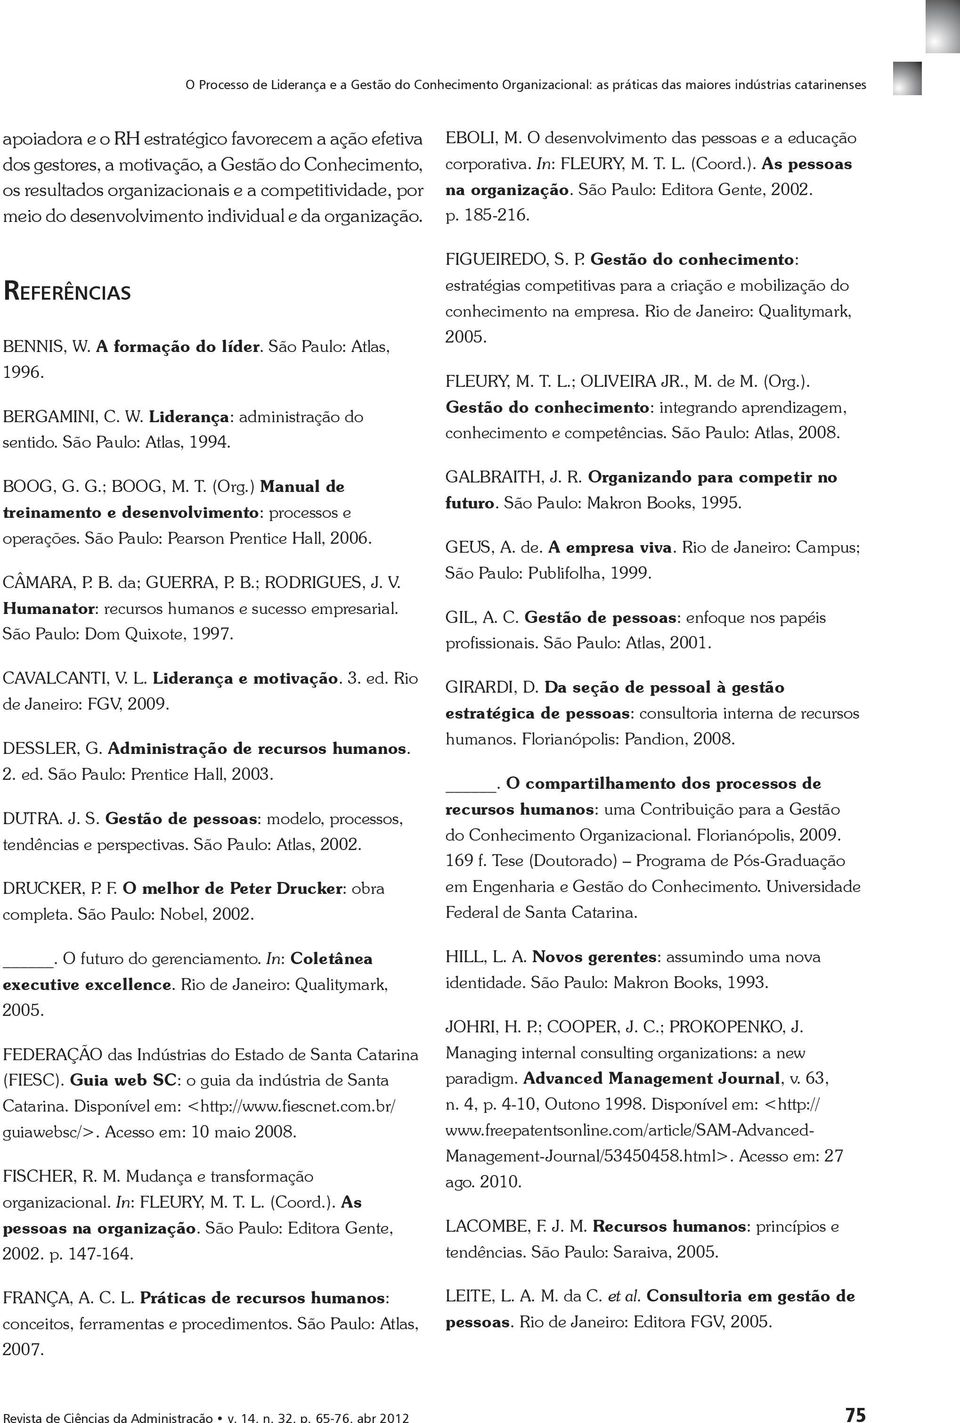 ) Manual de treinamento e desenvolvimento: processos e operações. São Paulo: Pearson Prentice Hall, 2006. CÂMARA, P. B. da; GUERRA, P. B.; RODRIGUES, J. V.